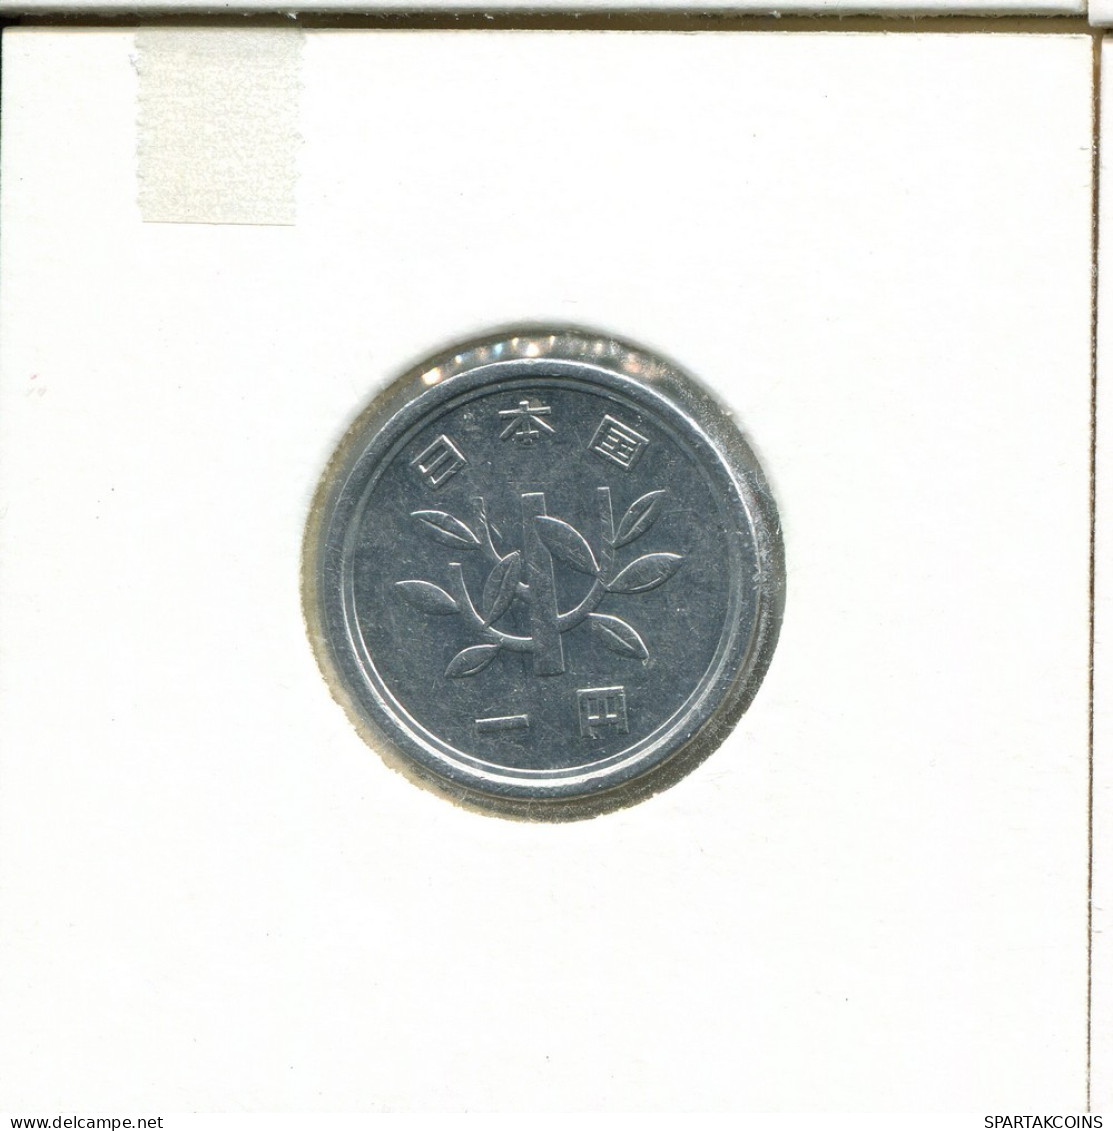 1 YEN 1990-2018 JAPAN Coin #AS059.U.A - Japon